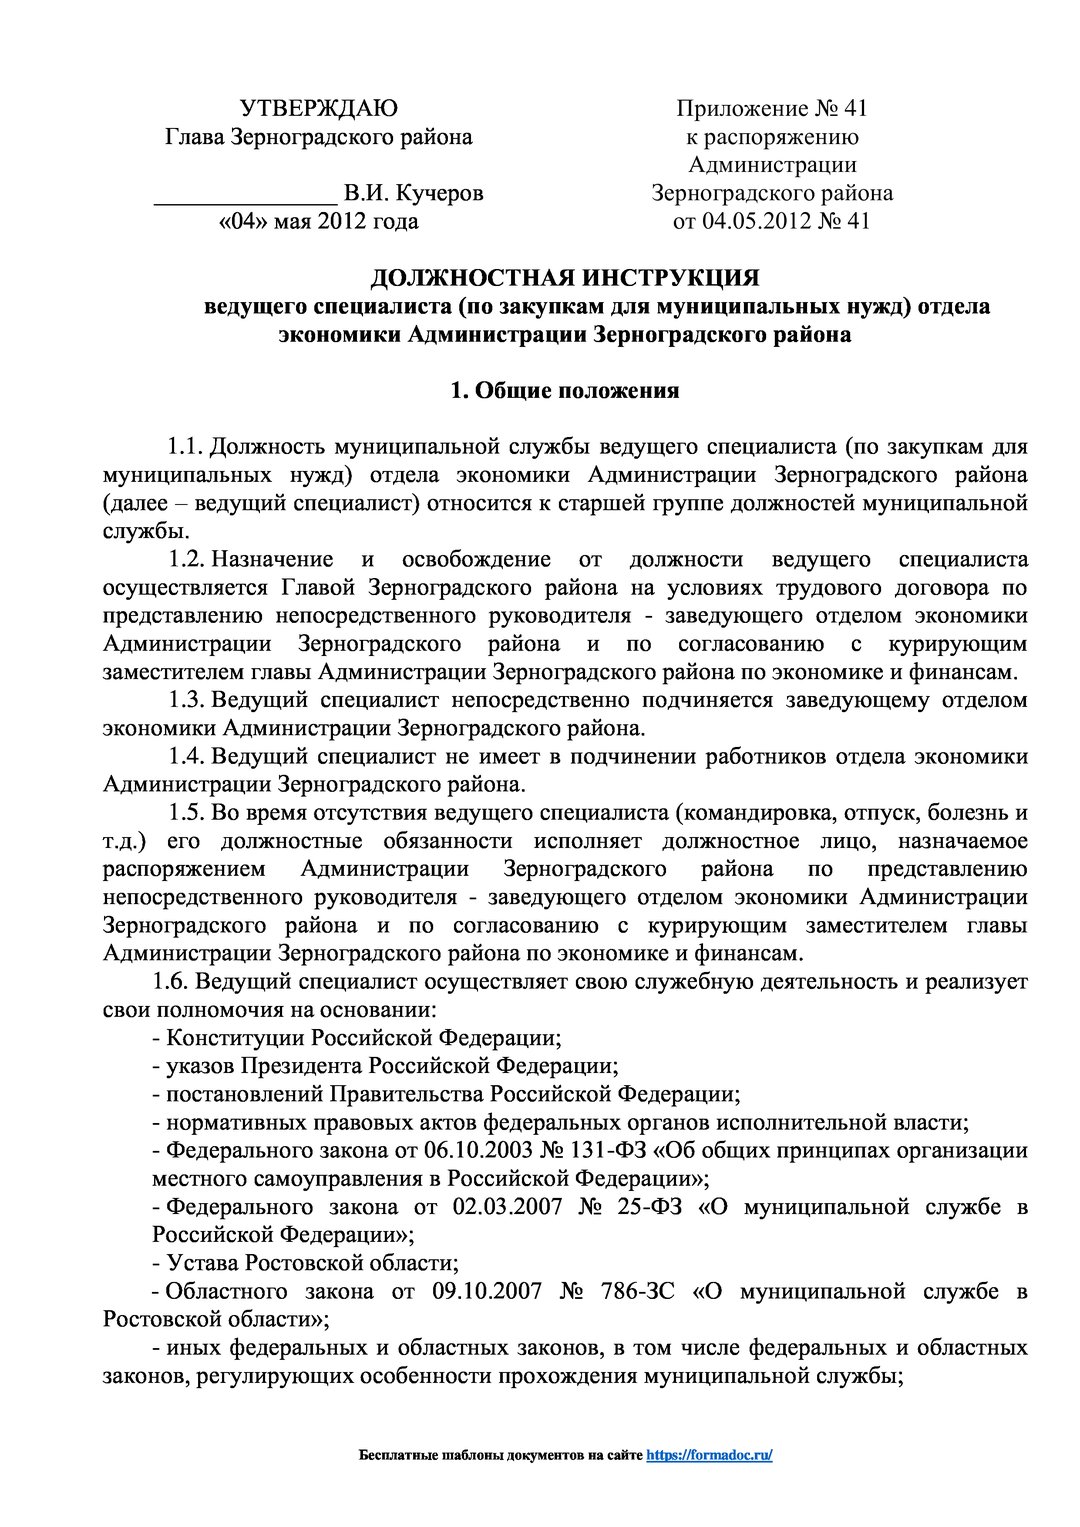 Должностная инструкция сотрудника пенсионного фонда РФ образец